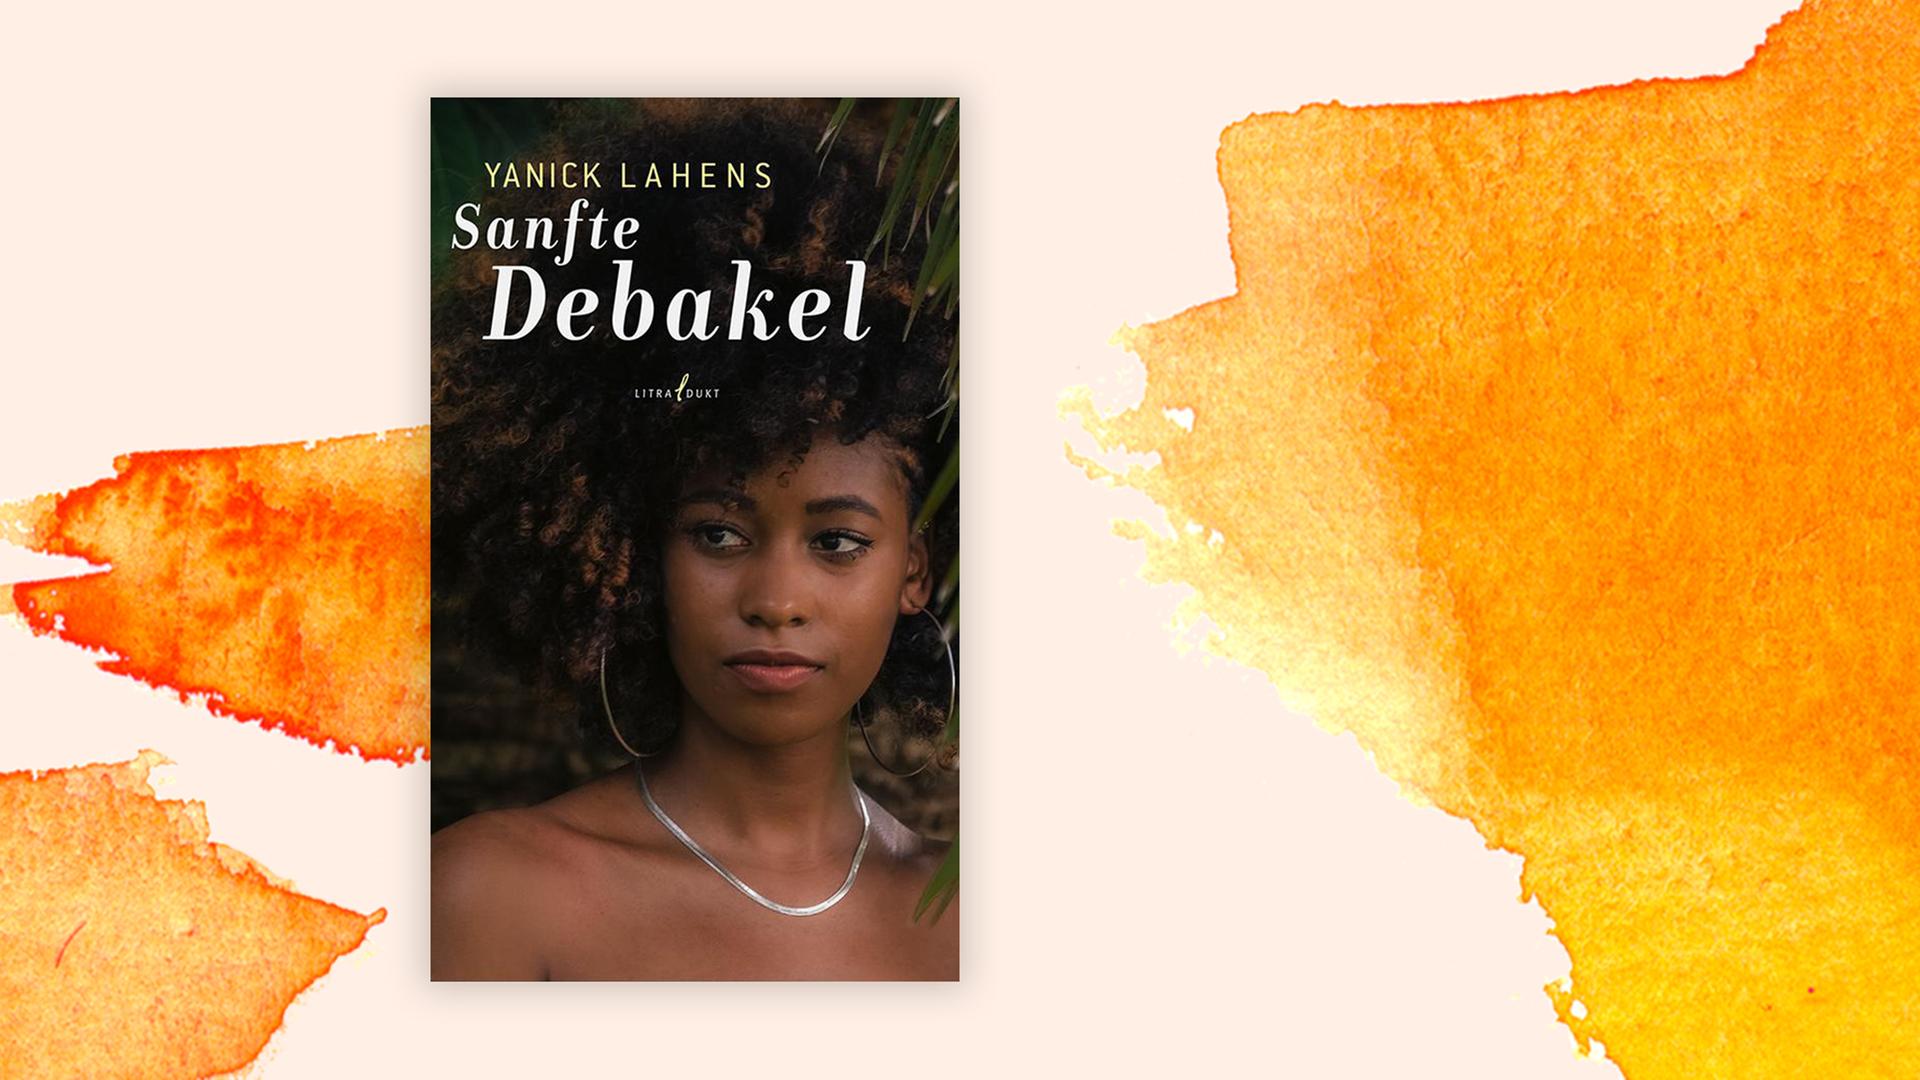 Buchcover "Sanfte Debakel" von Yanick Lahens.